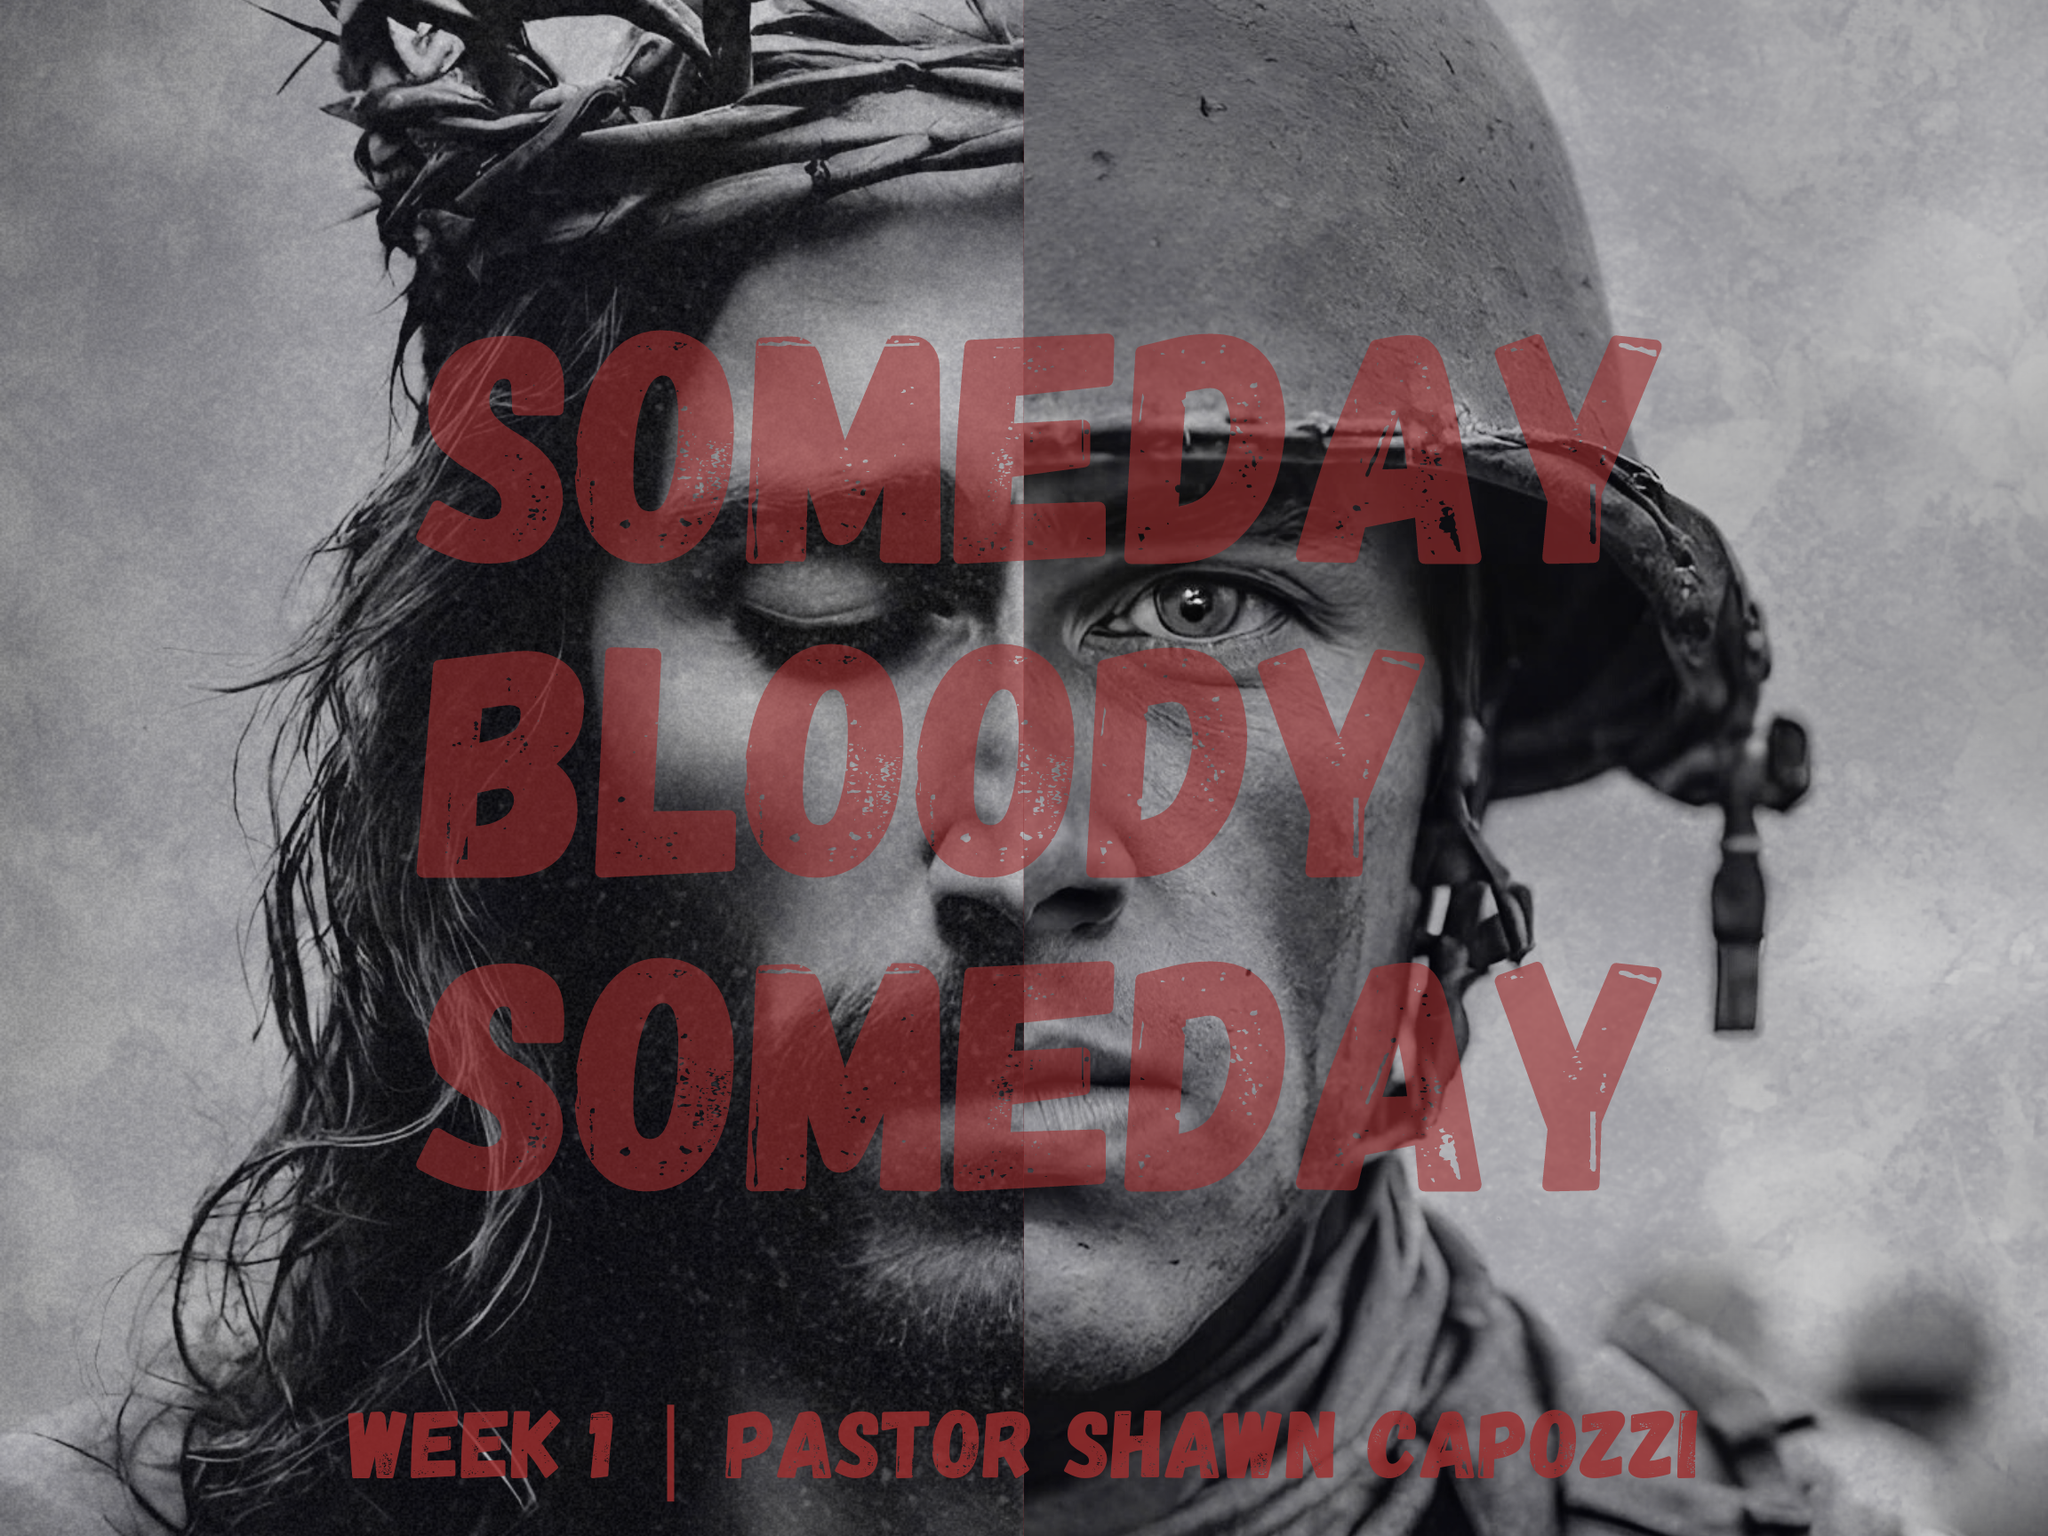 Someday Bloody Sunday